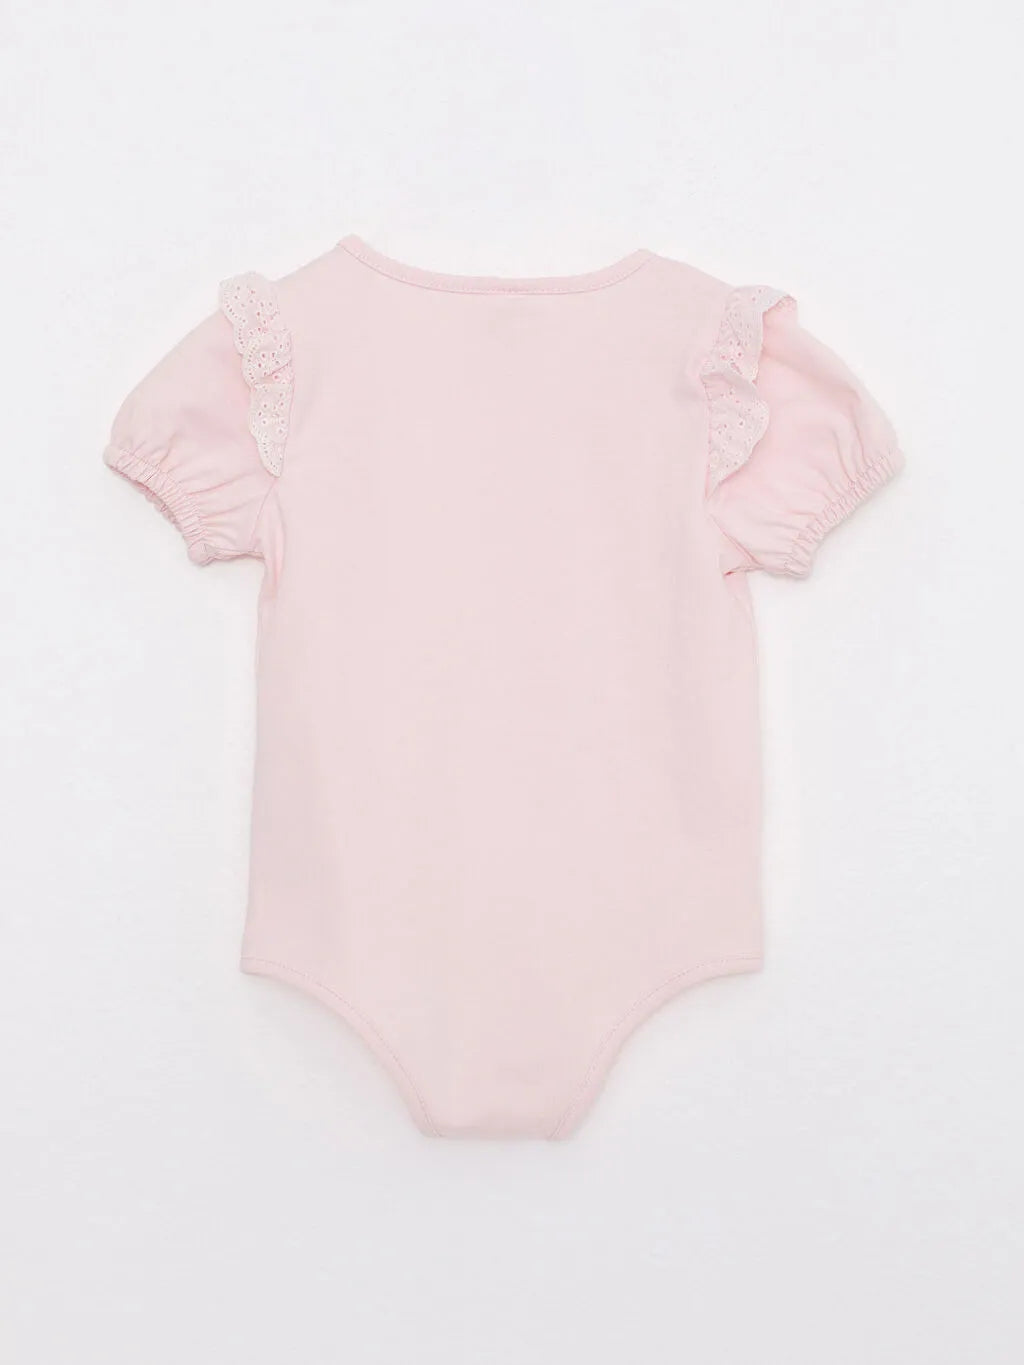 Crew Neck Short Sleeve Printed Cotton Baby Girl Snap Button Body